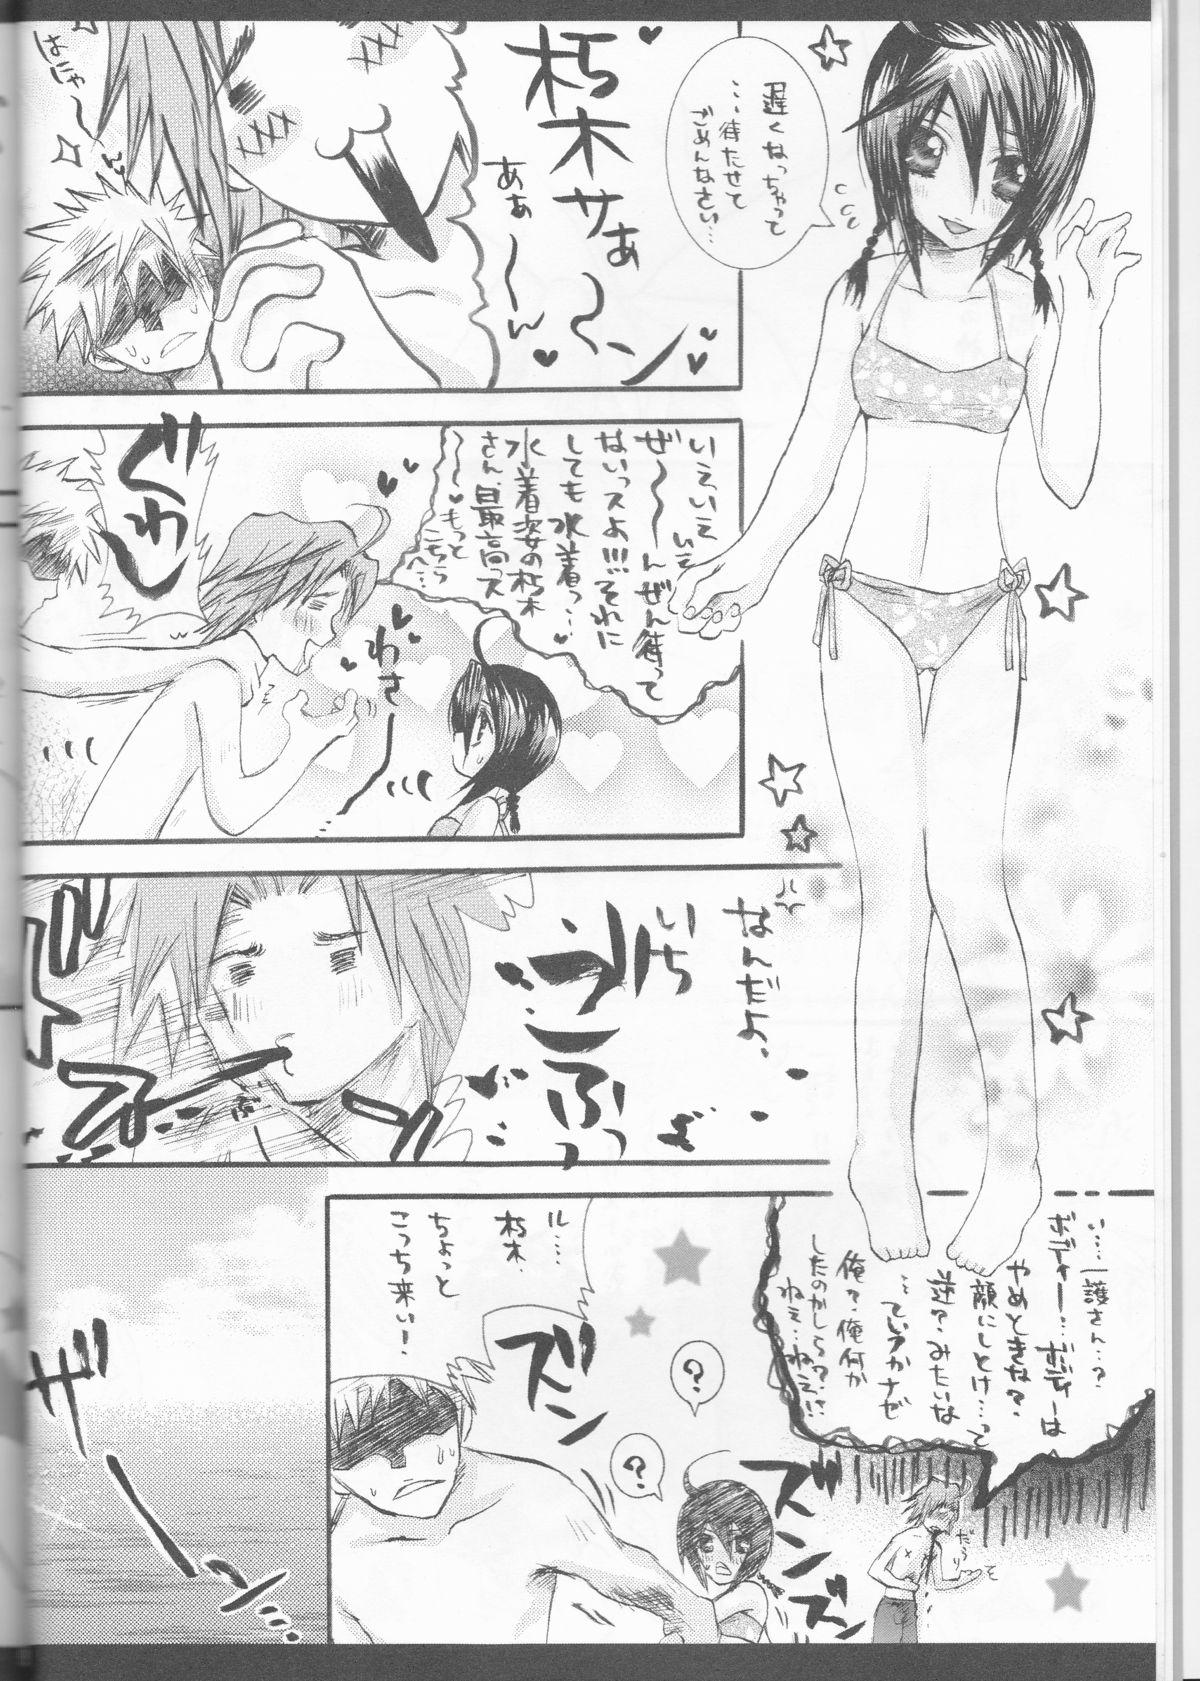 Perfect Rukia Kuchiki Minimum Maniax File - Bleach Corno - Page 8